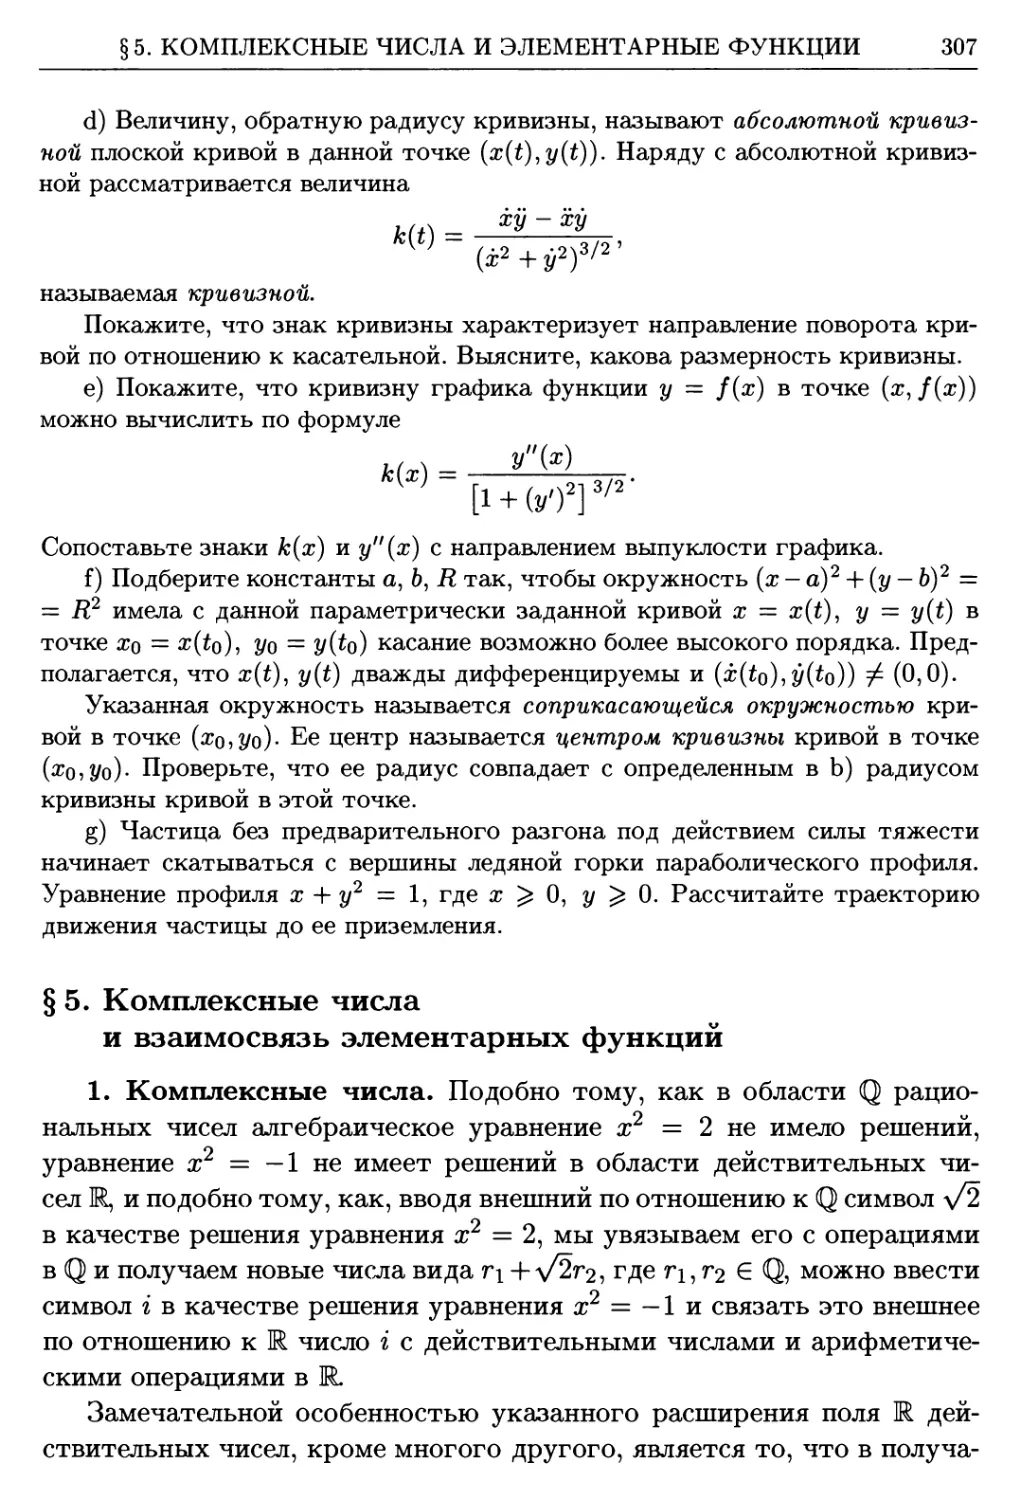 §5. Комплексные числа и взаимосвязь элементарных функций